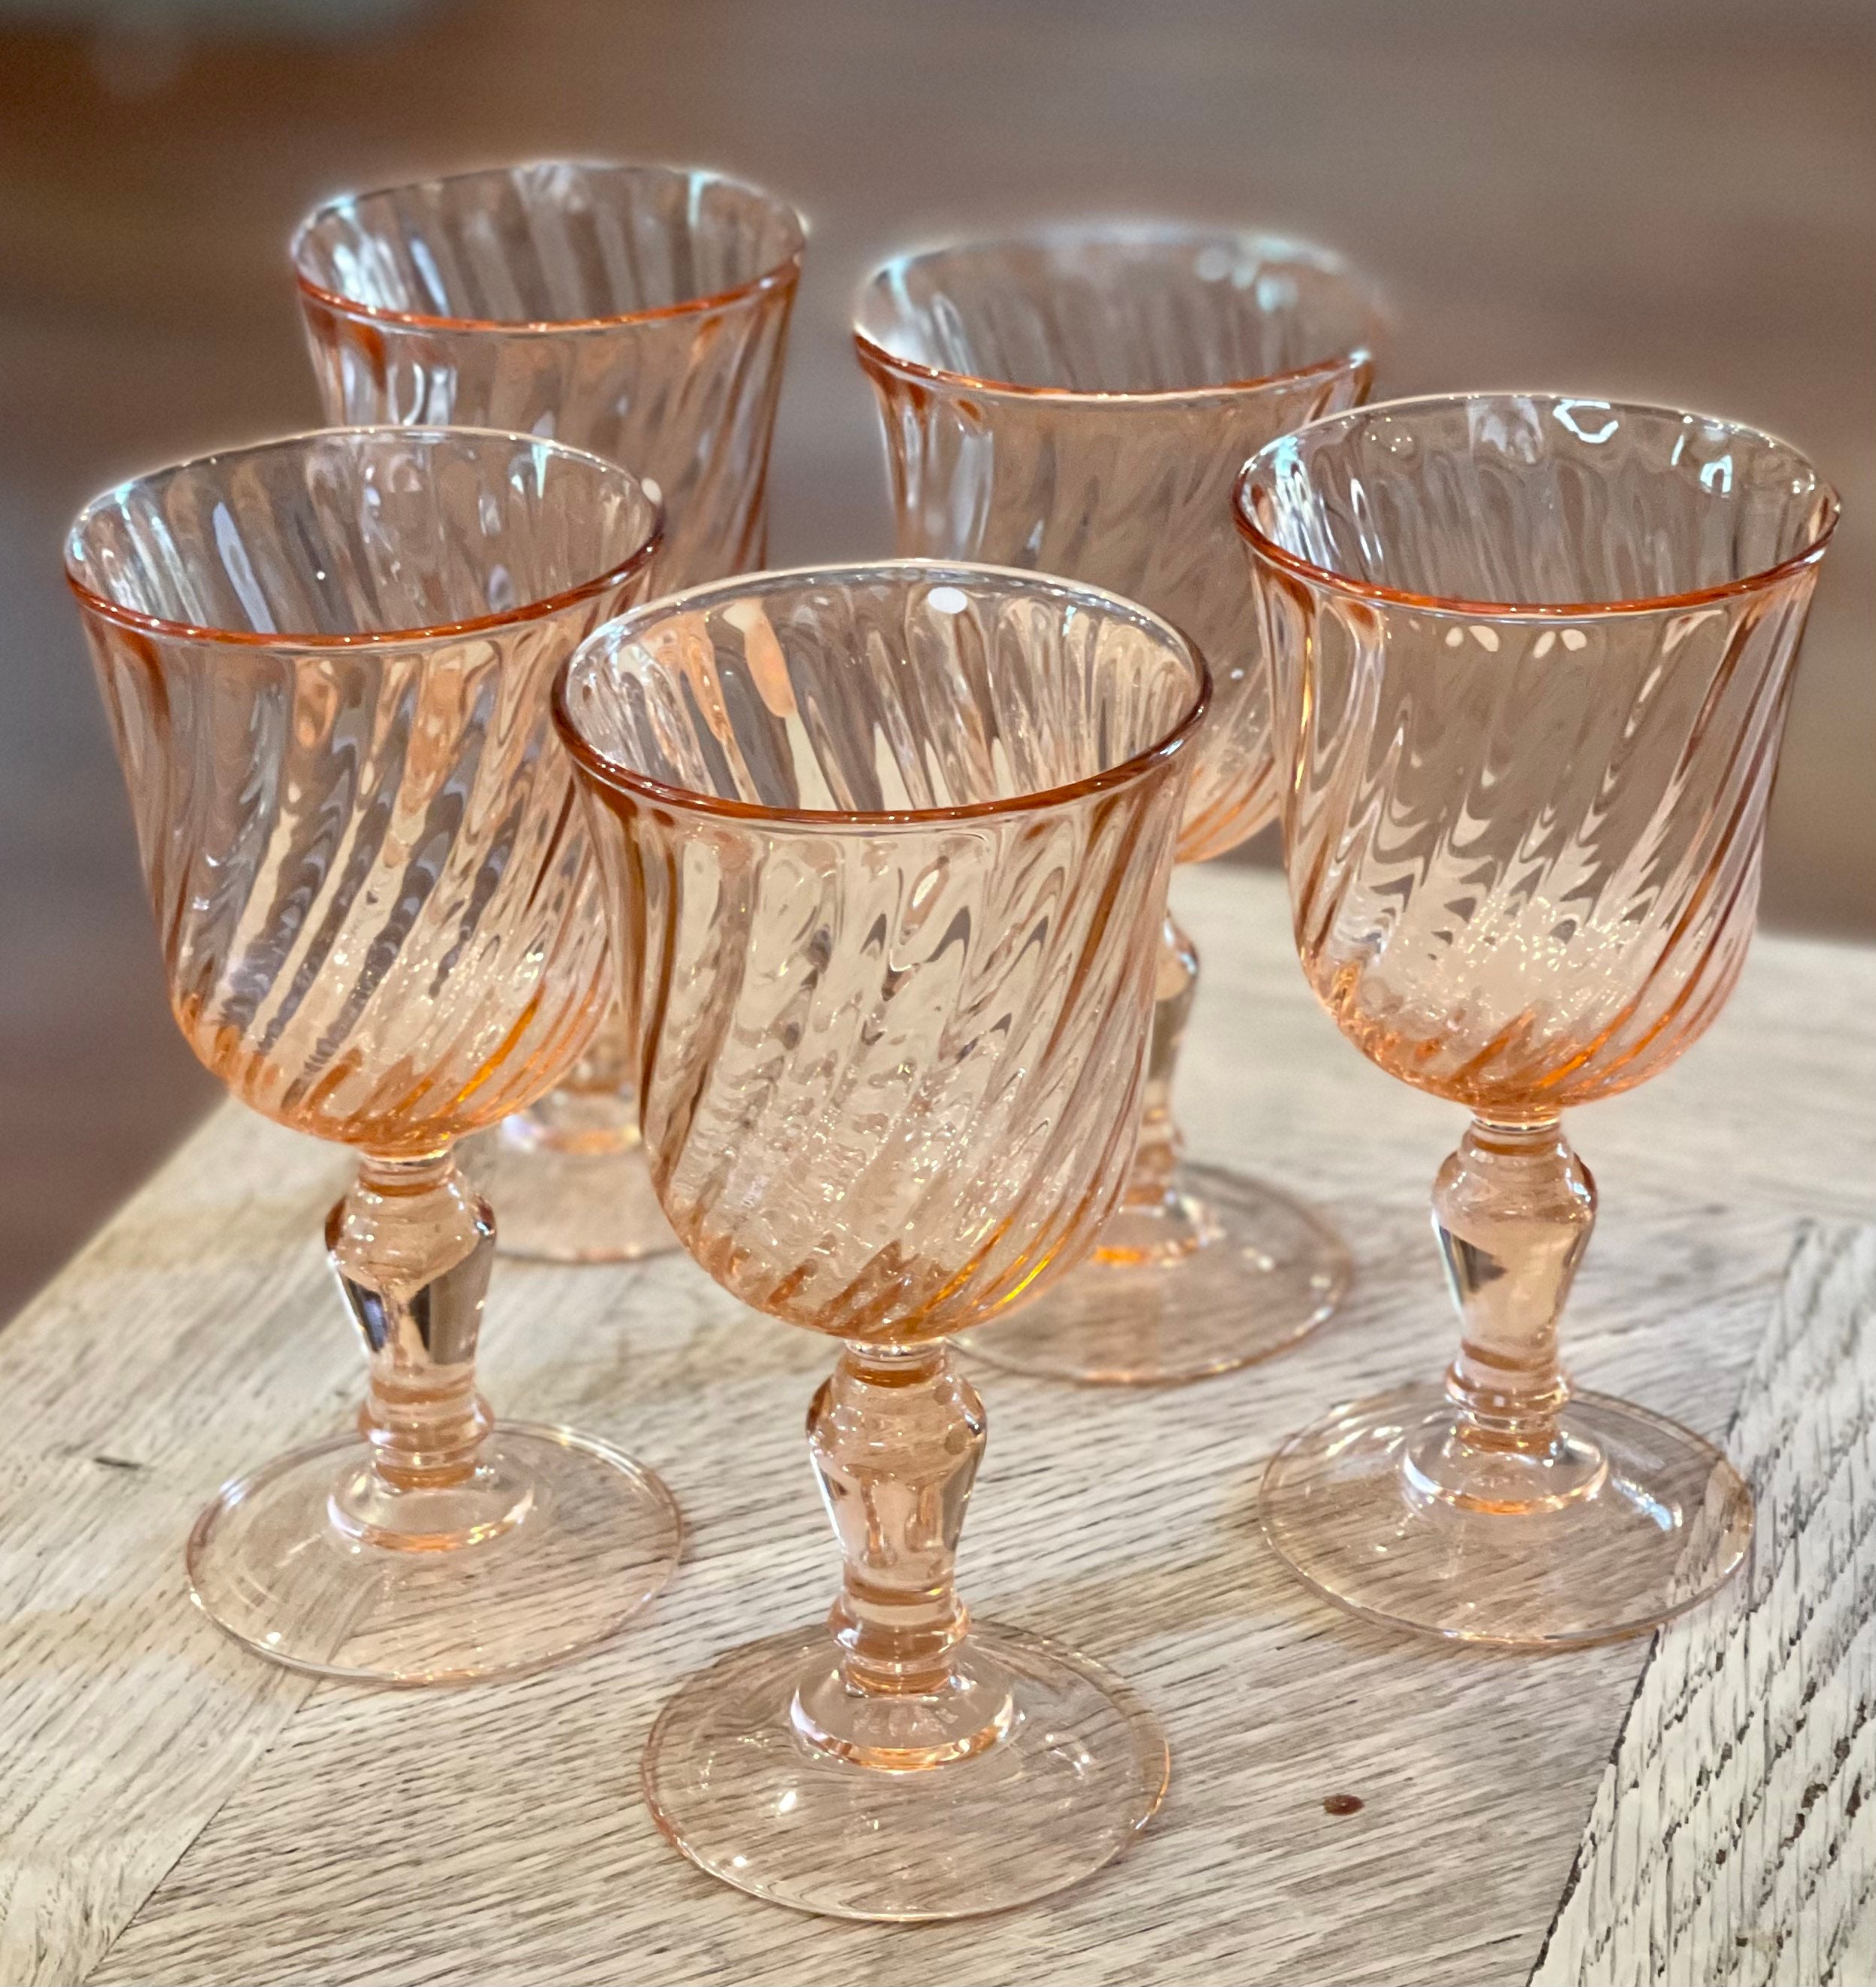 Vintage Pink Stem Wine Glasses Luminarc France Set of 5 Stemware Rosé 